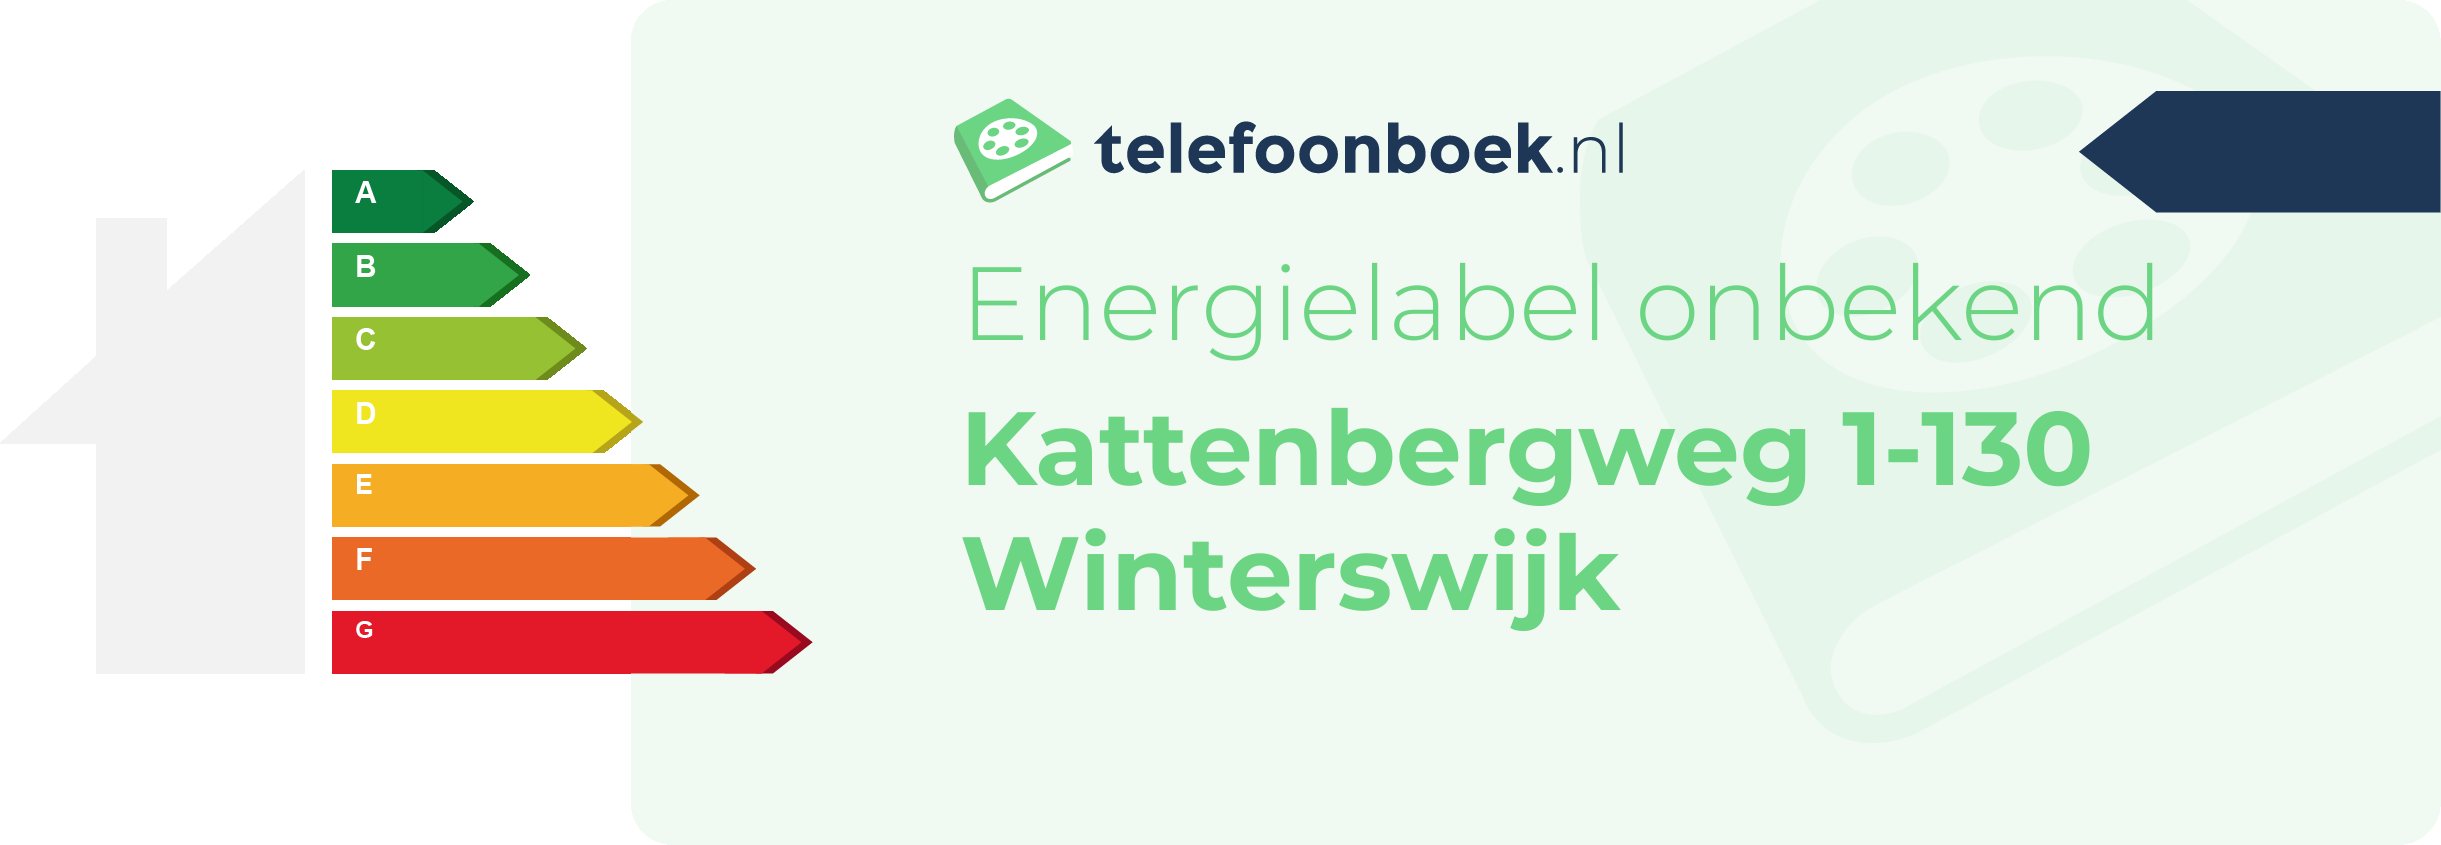 Energielabel Kattenbergweg 1-130 Winterswijk